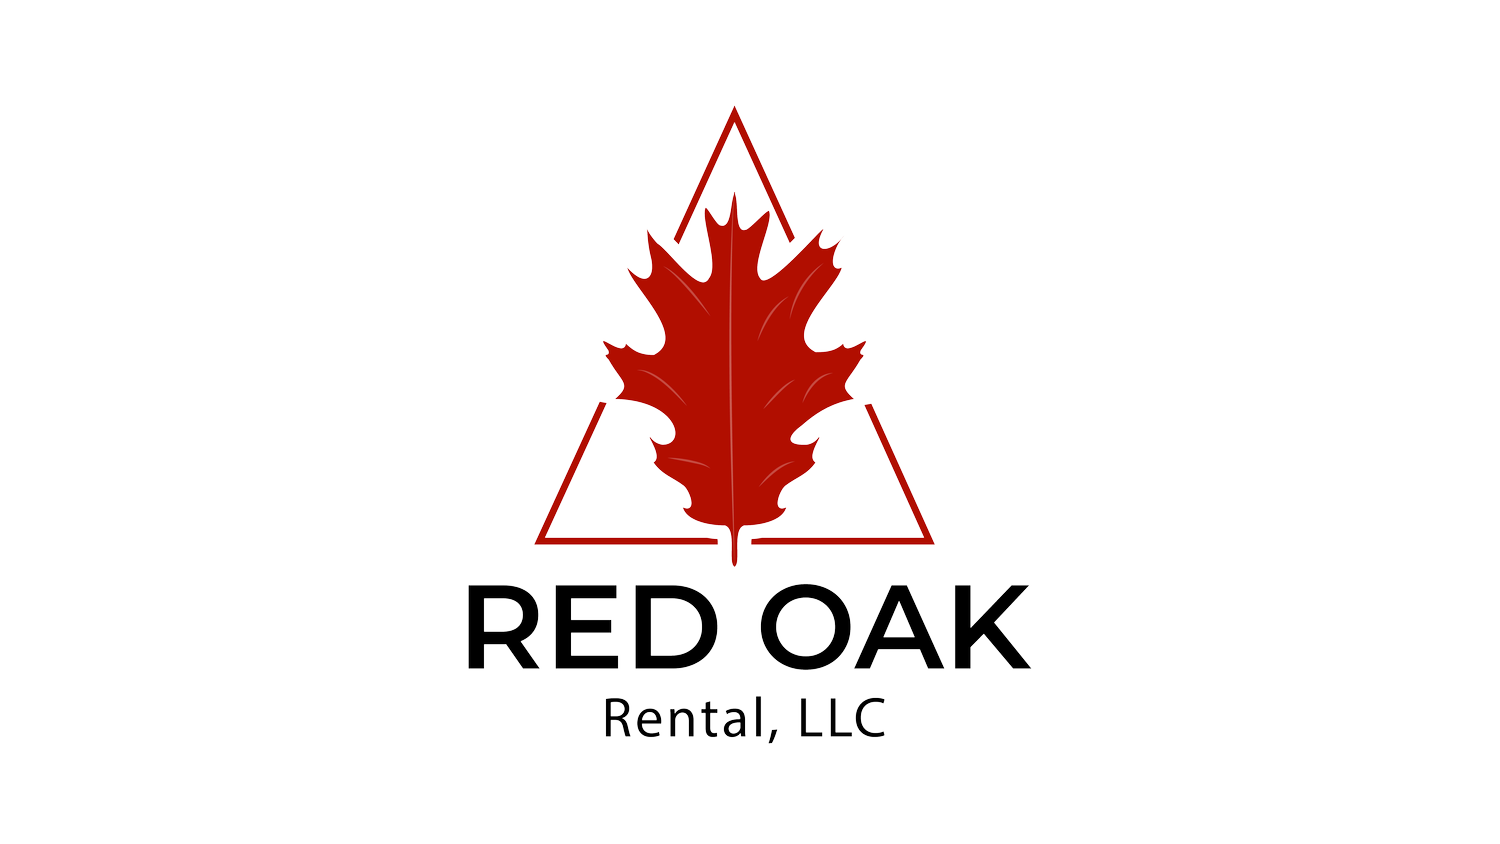 Red Oak Rental, LLC